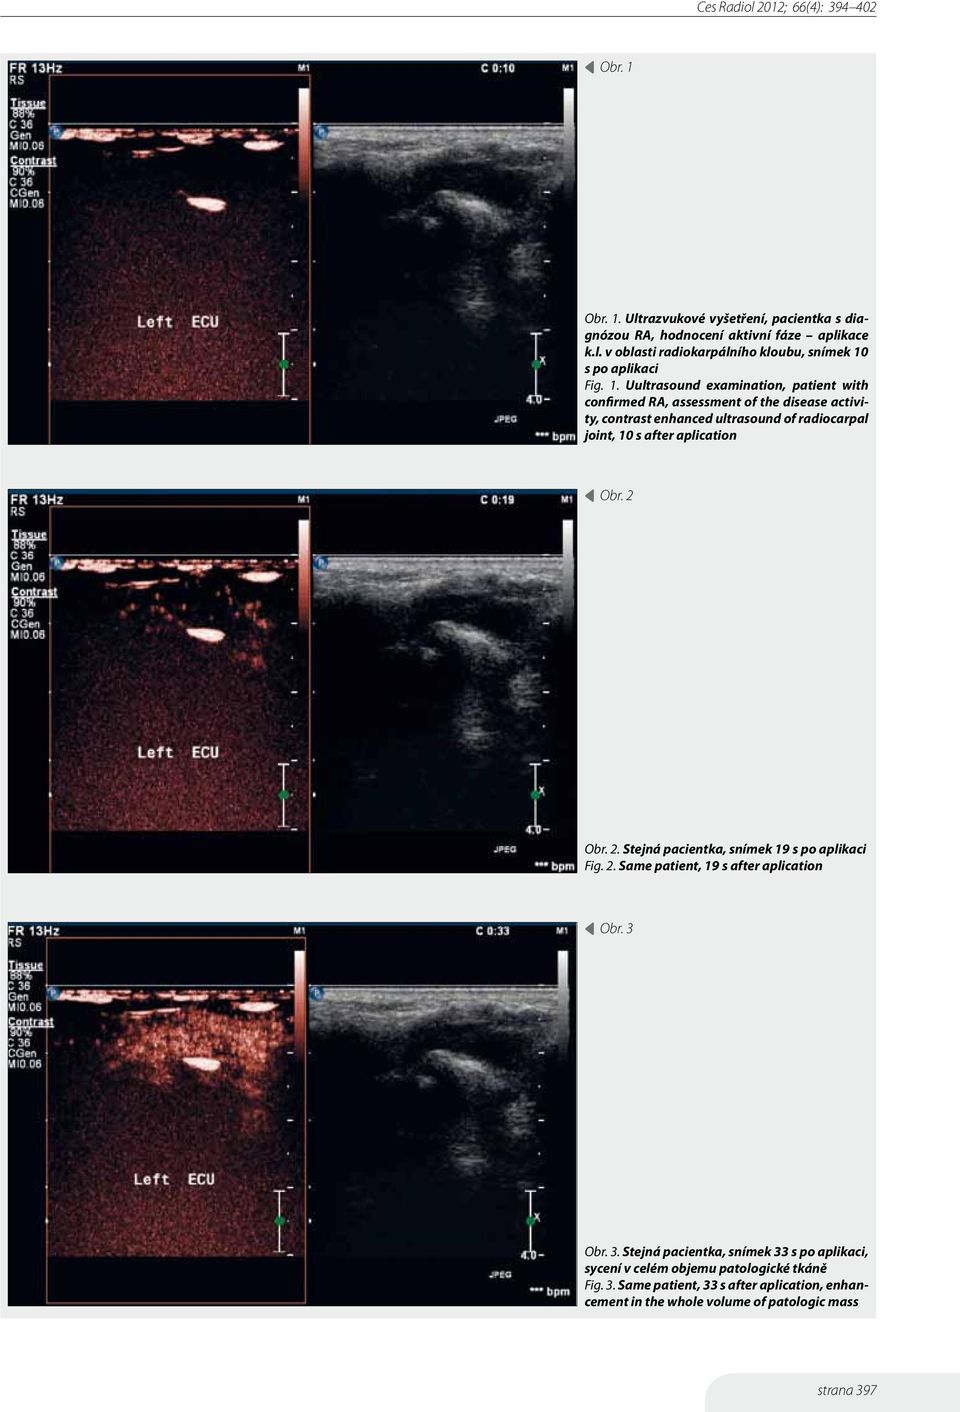 aplication Obr. 2 Obr. 2. Stejná pacientka, snímek 19 s po aplikaci Fig. 2. Same patient, 19 s after aplication Obr. 3 